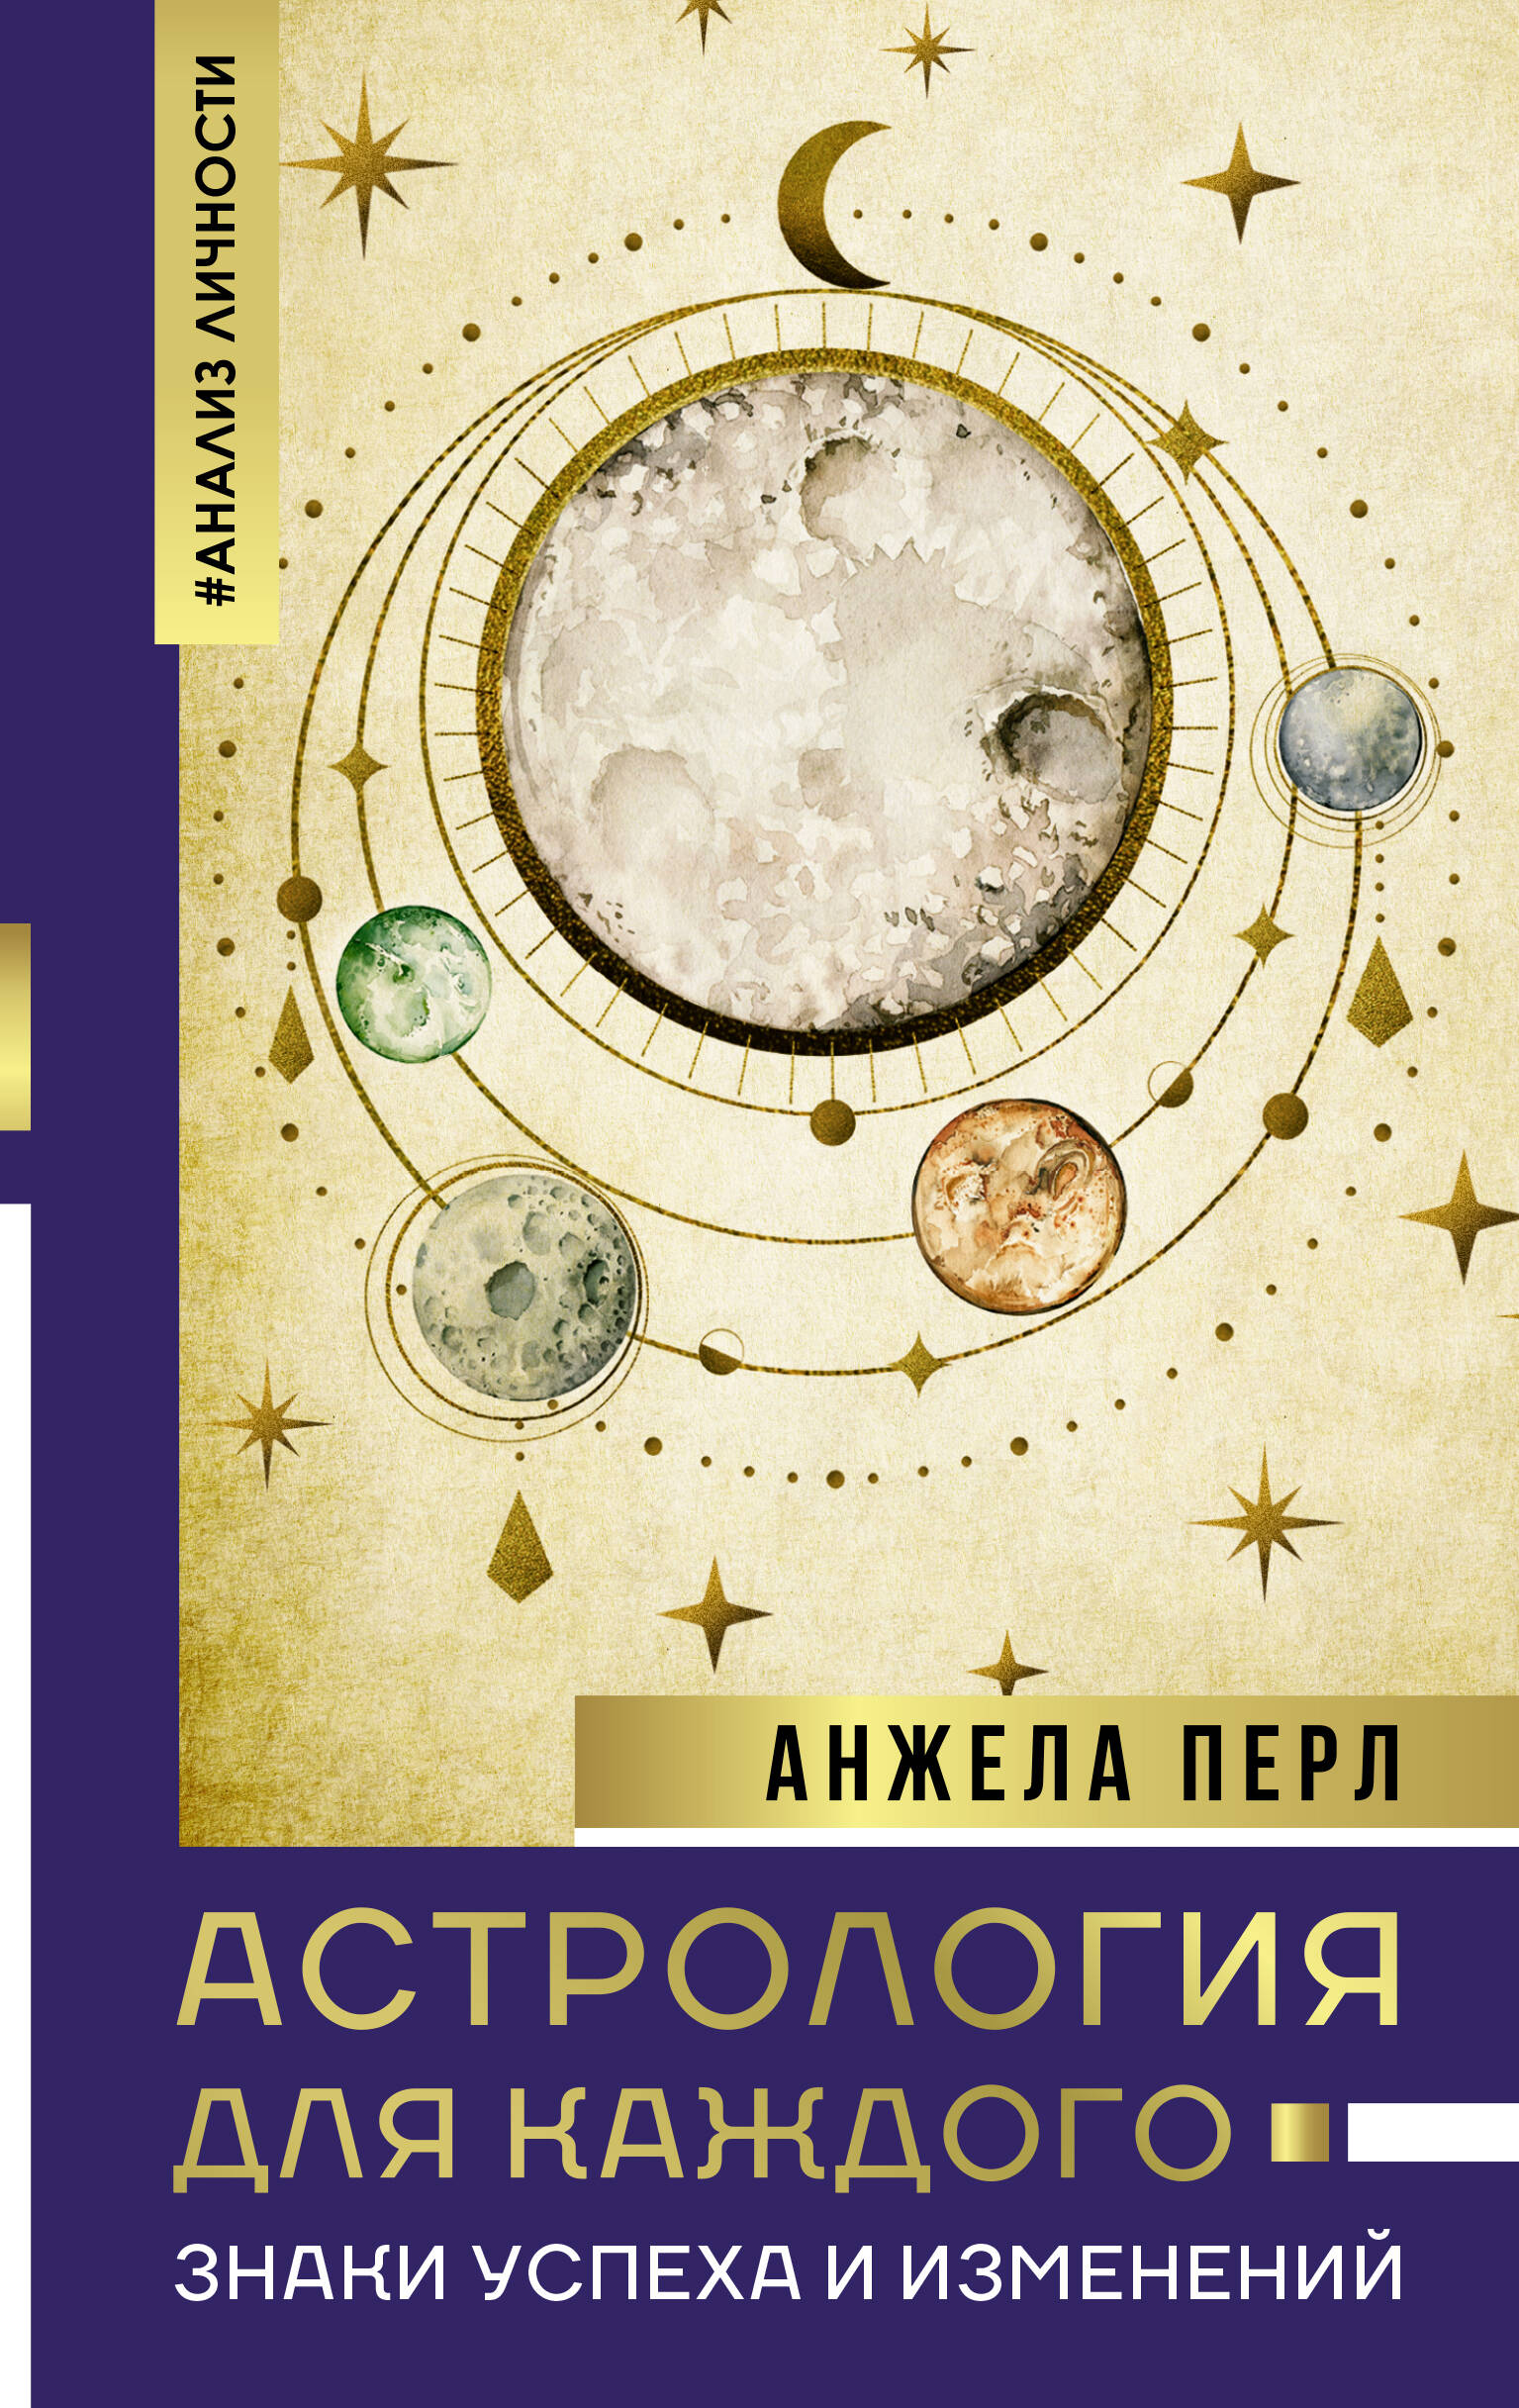 Астрология для каждого: знаки успеха и изменений солнечные знаки занимательная астрология